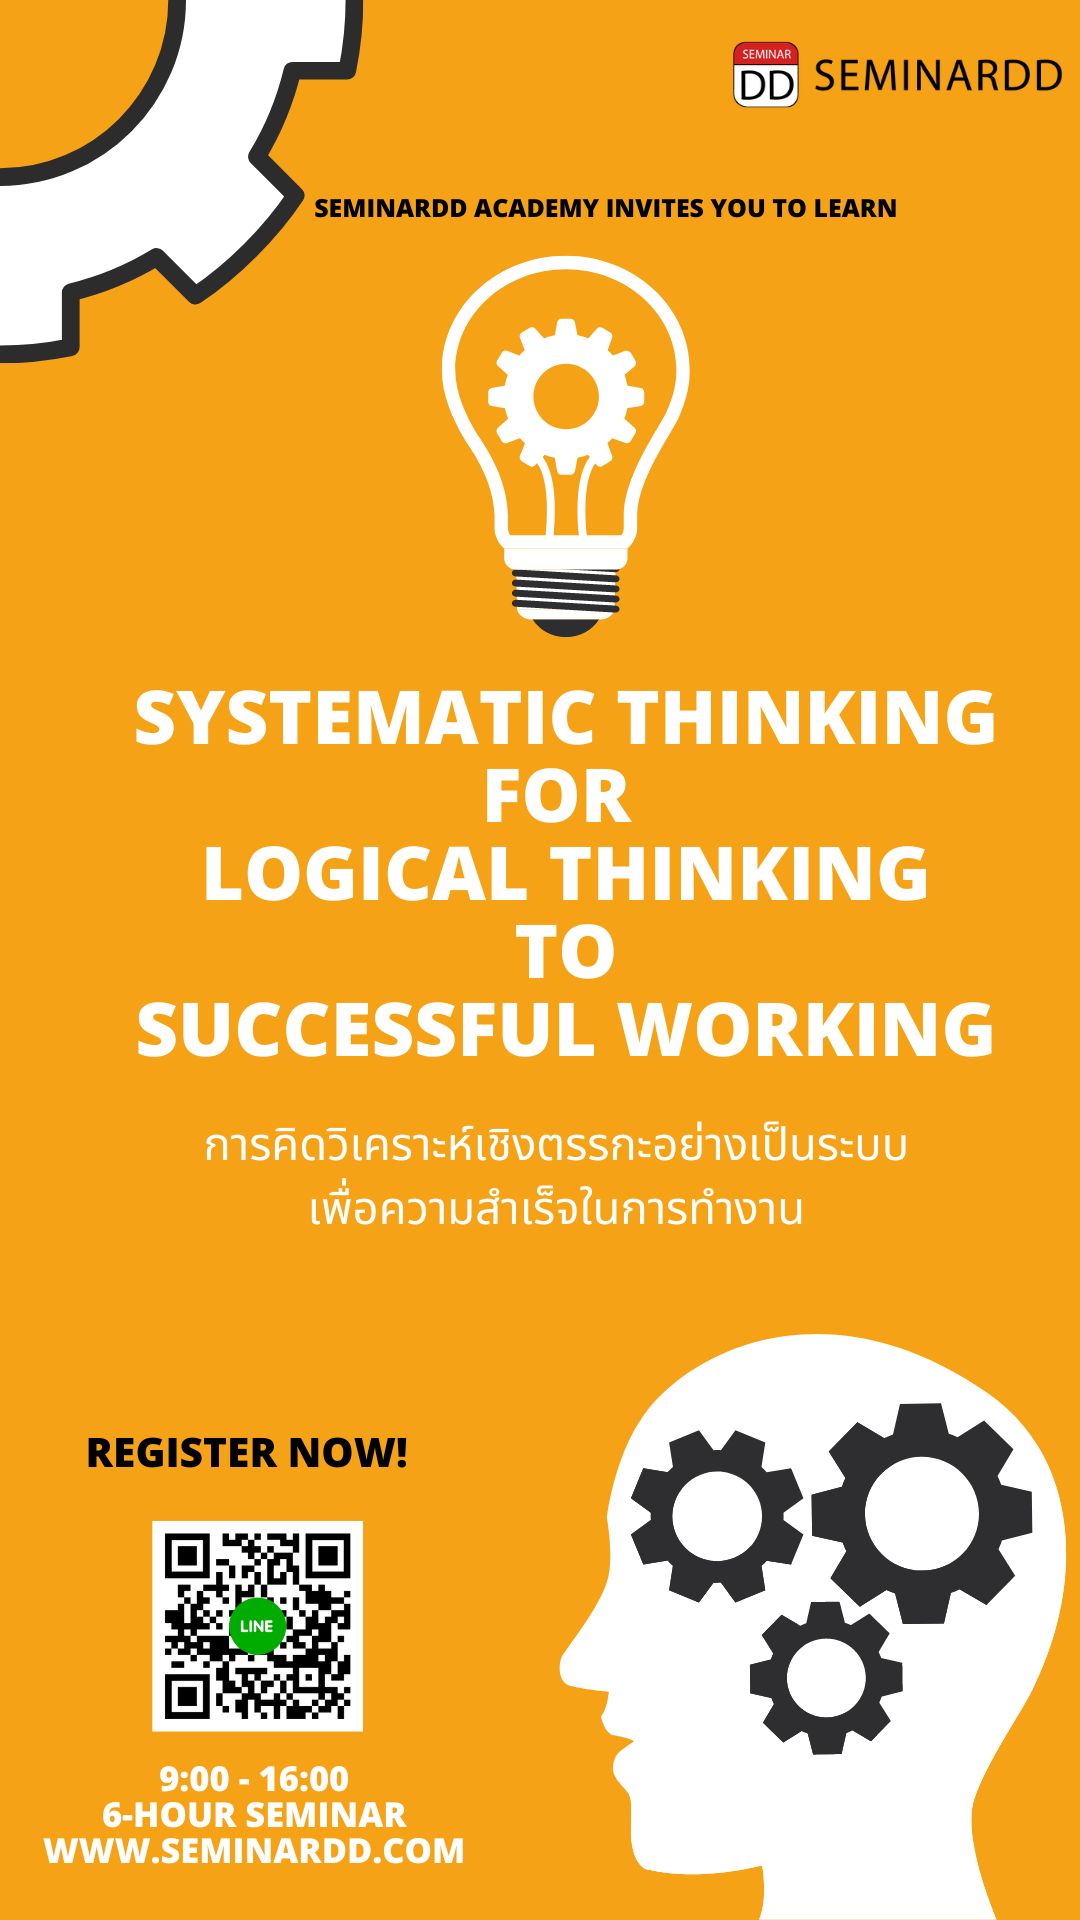 หลักสูตร การคิดวิเคราะห์เชิงตรรกะอย่างเป็นระบบเพื่อความสำเร็จในการทำงาน ( Systematic Thinking for Logical  Thinking to Successful Working )